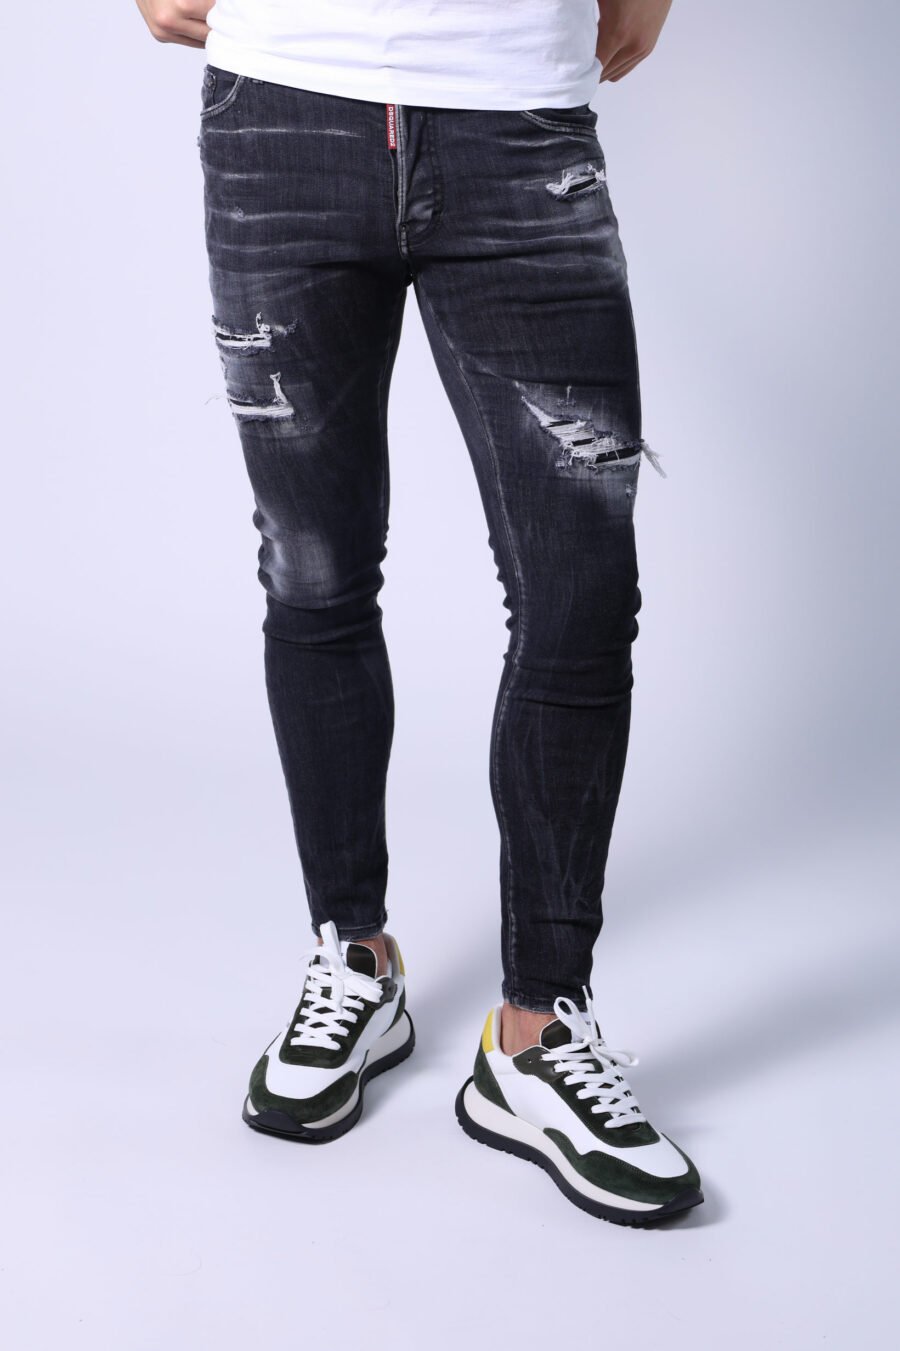 Pantalon skater en jean noir déchiré et semi-usé - Untitled Catalog 05316